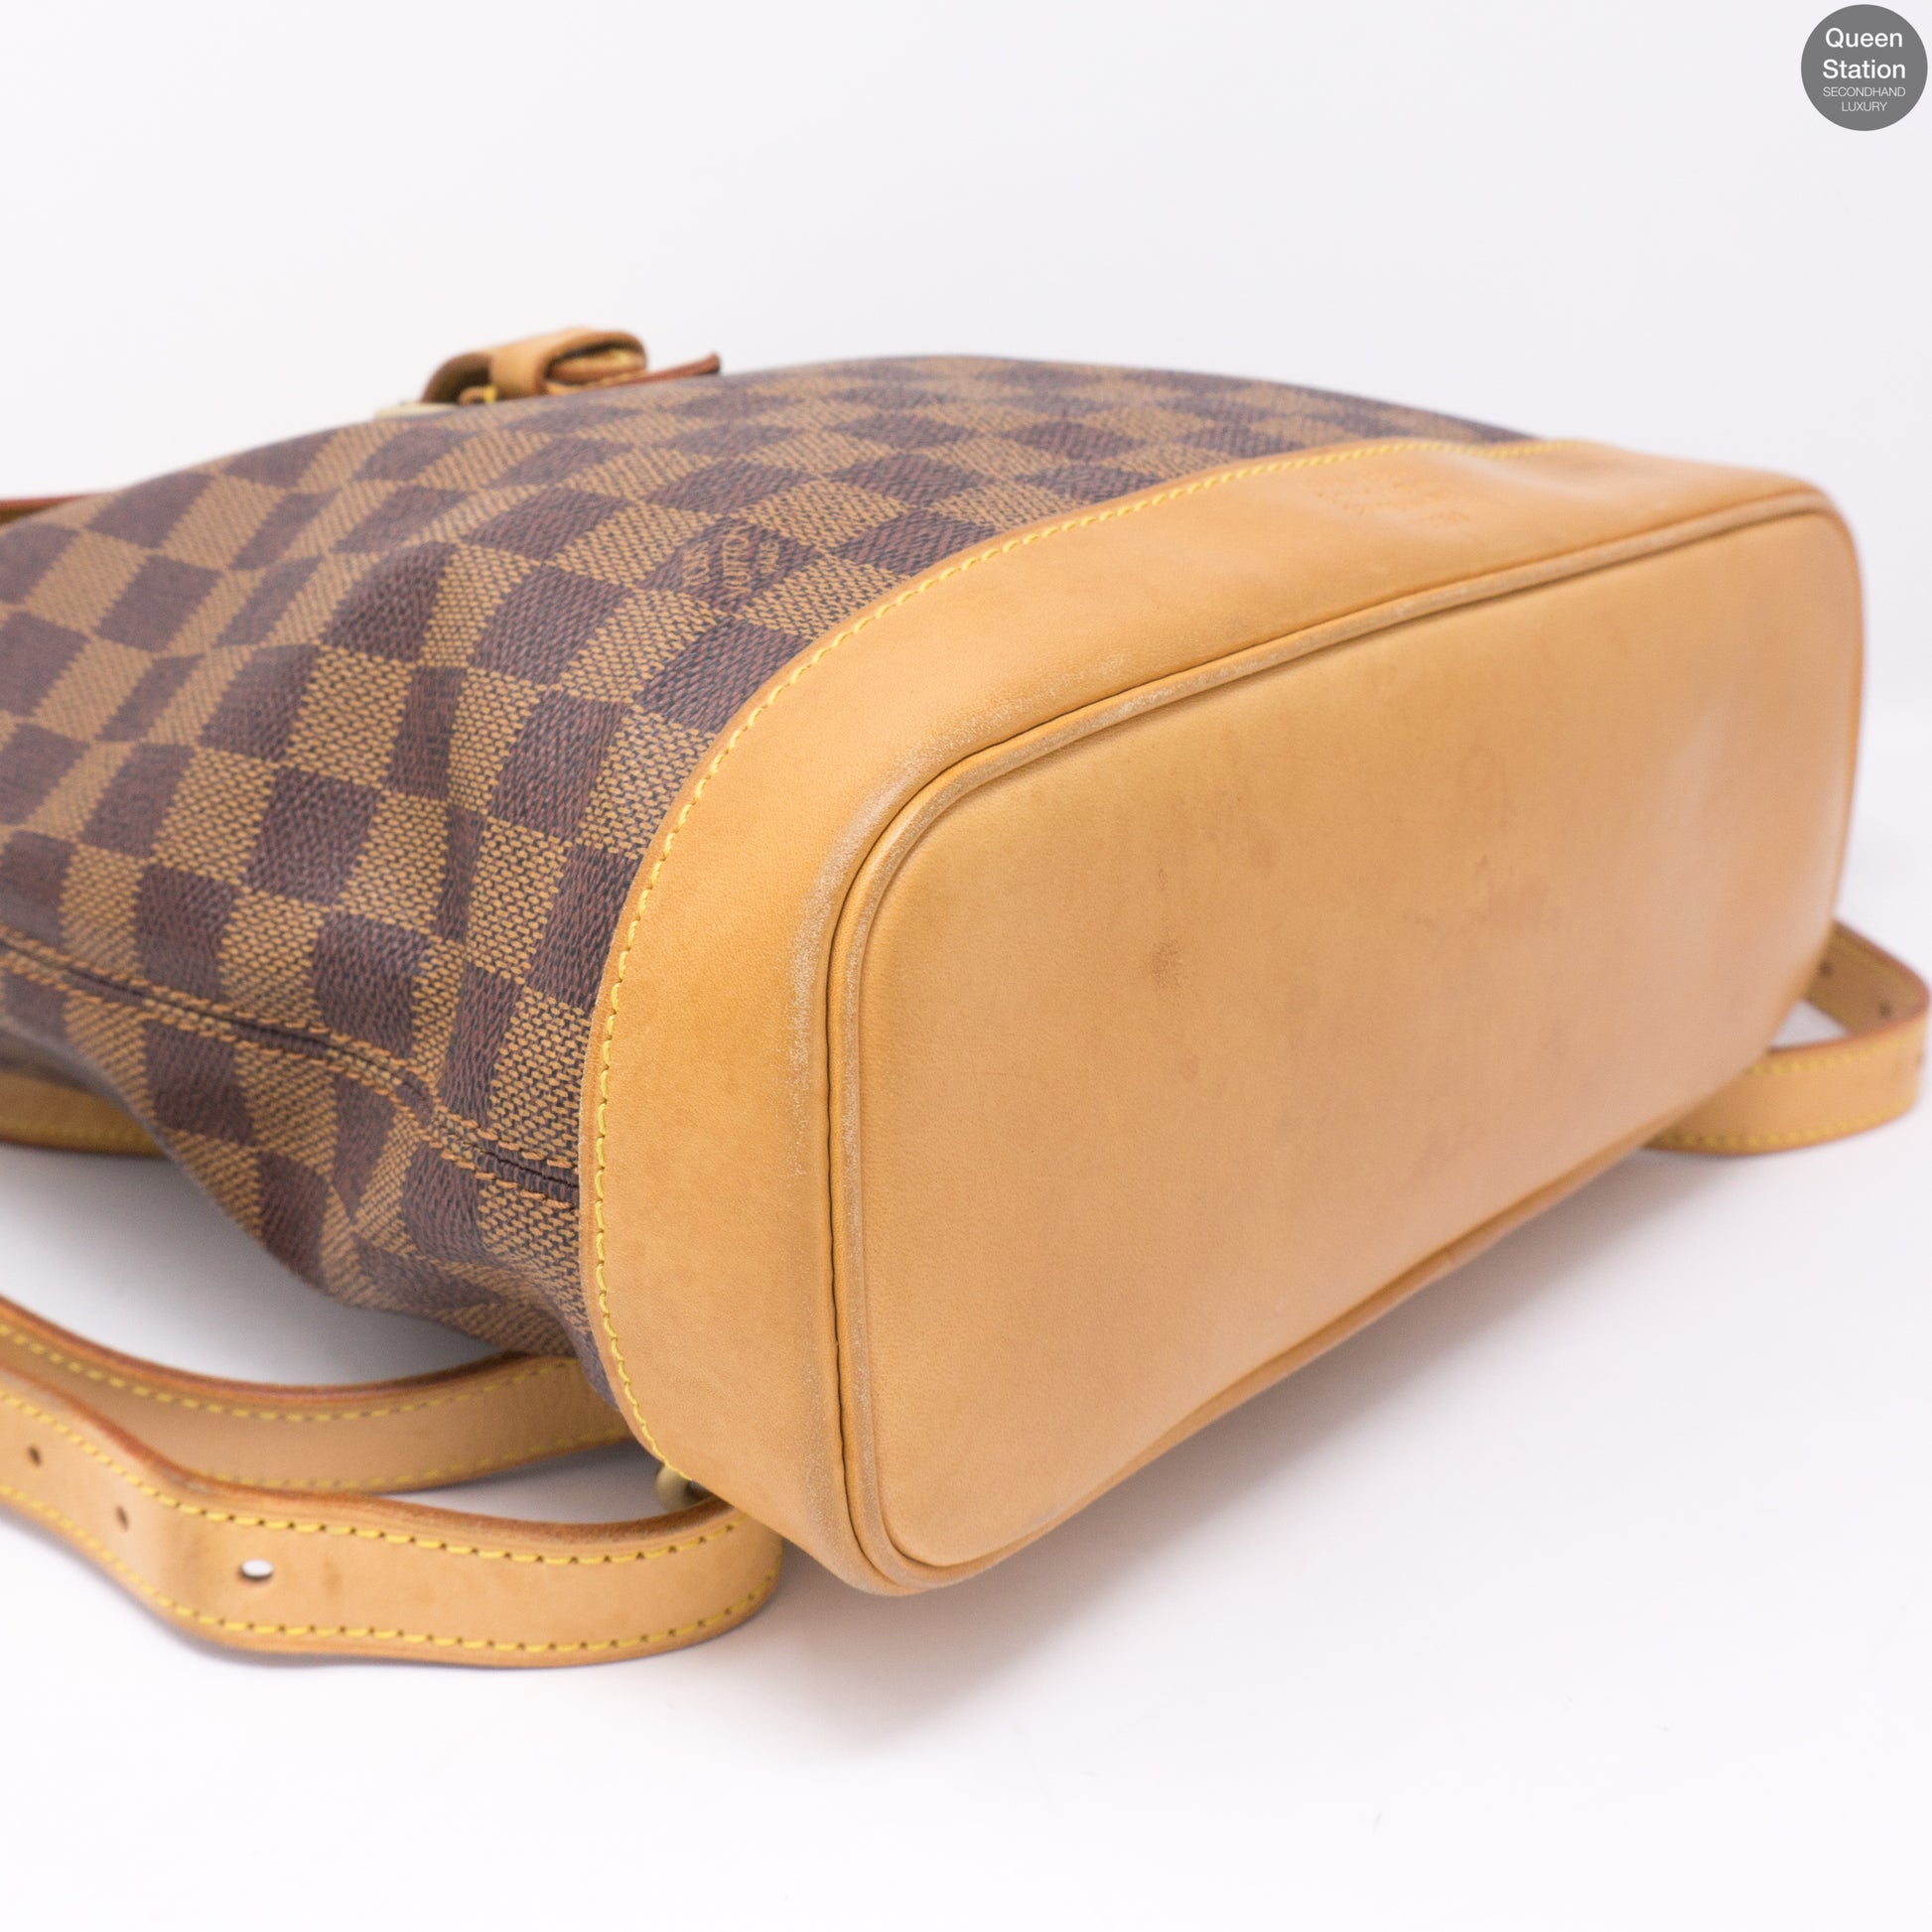 Louis Vuitton Damier Ebene Monogram Arlequin Backpack – Timeless